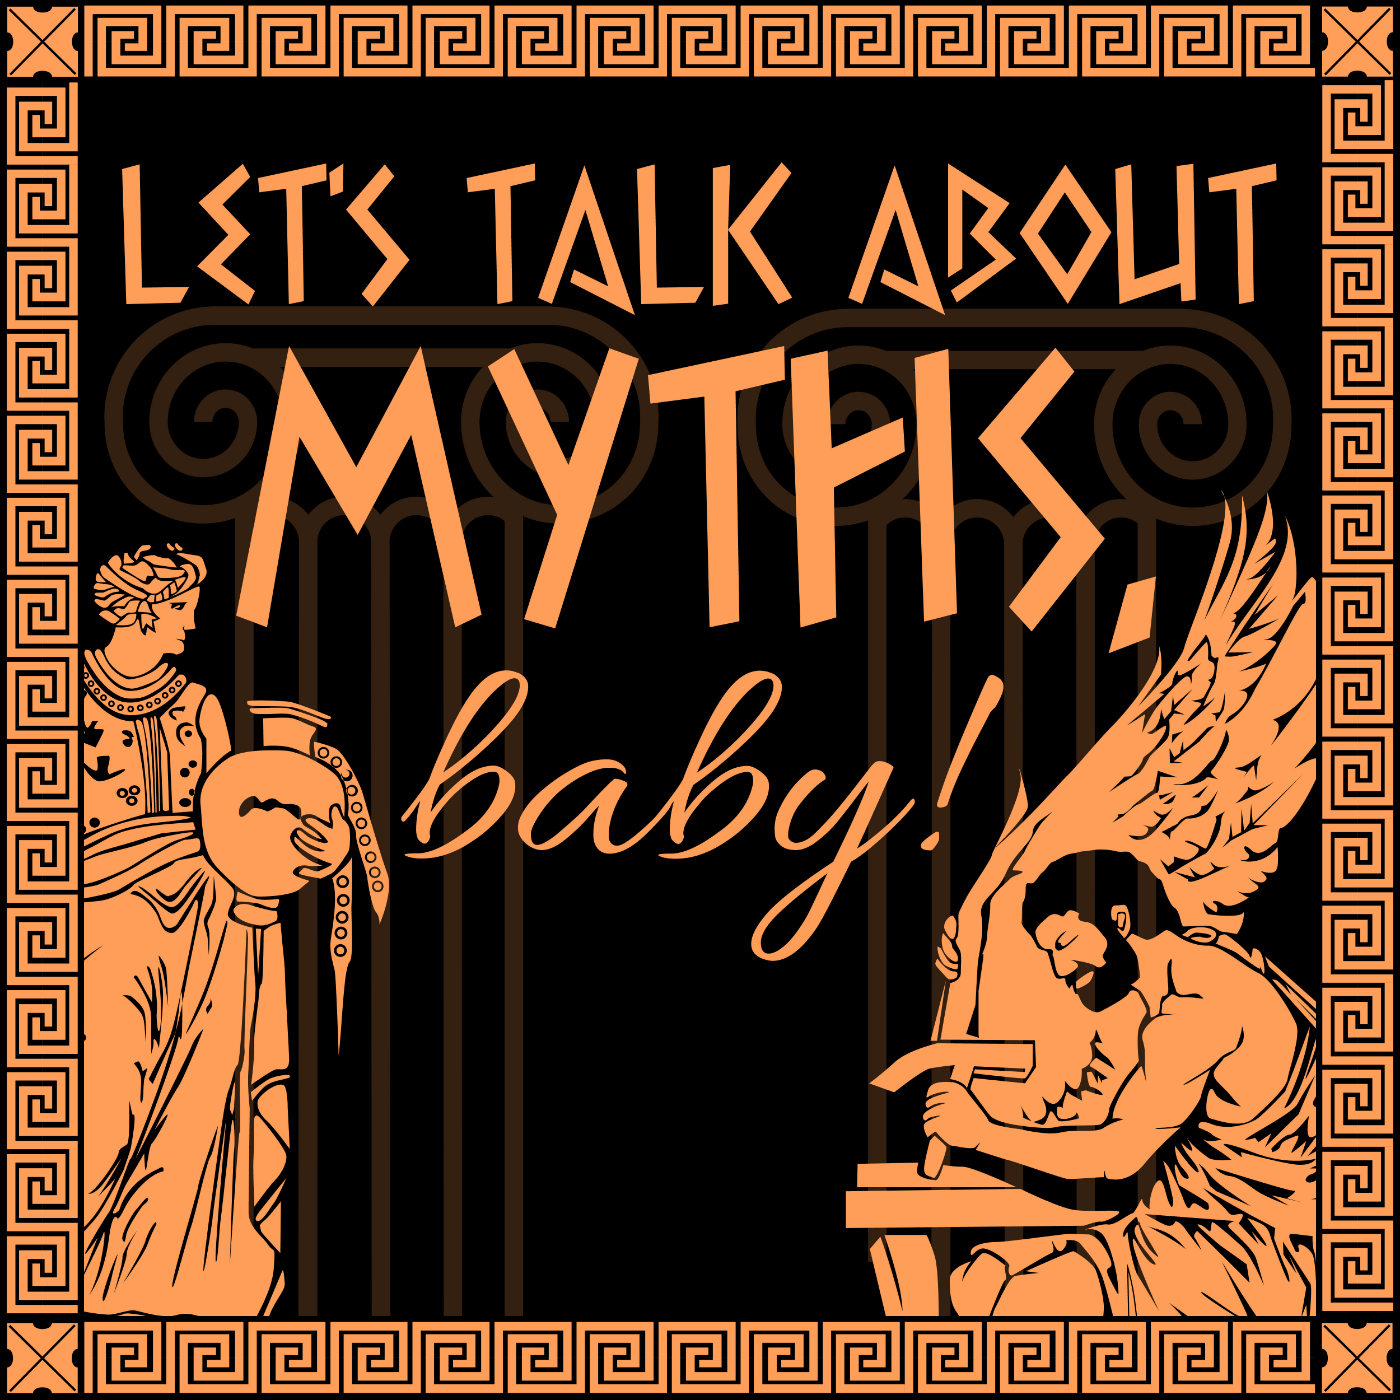 A podcast of mythological proportions